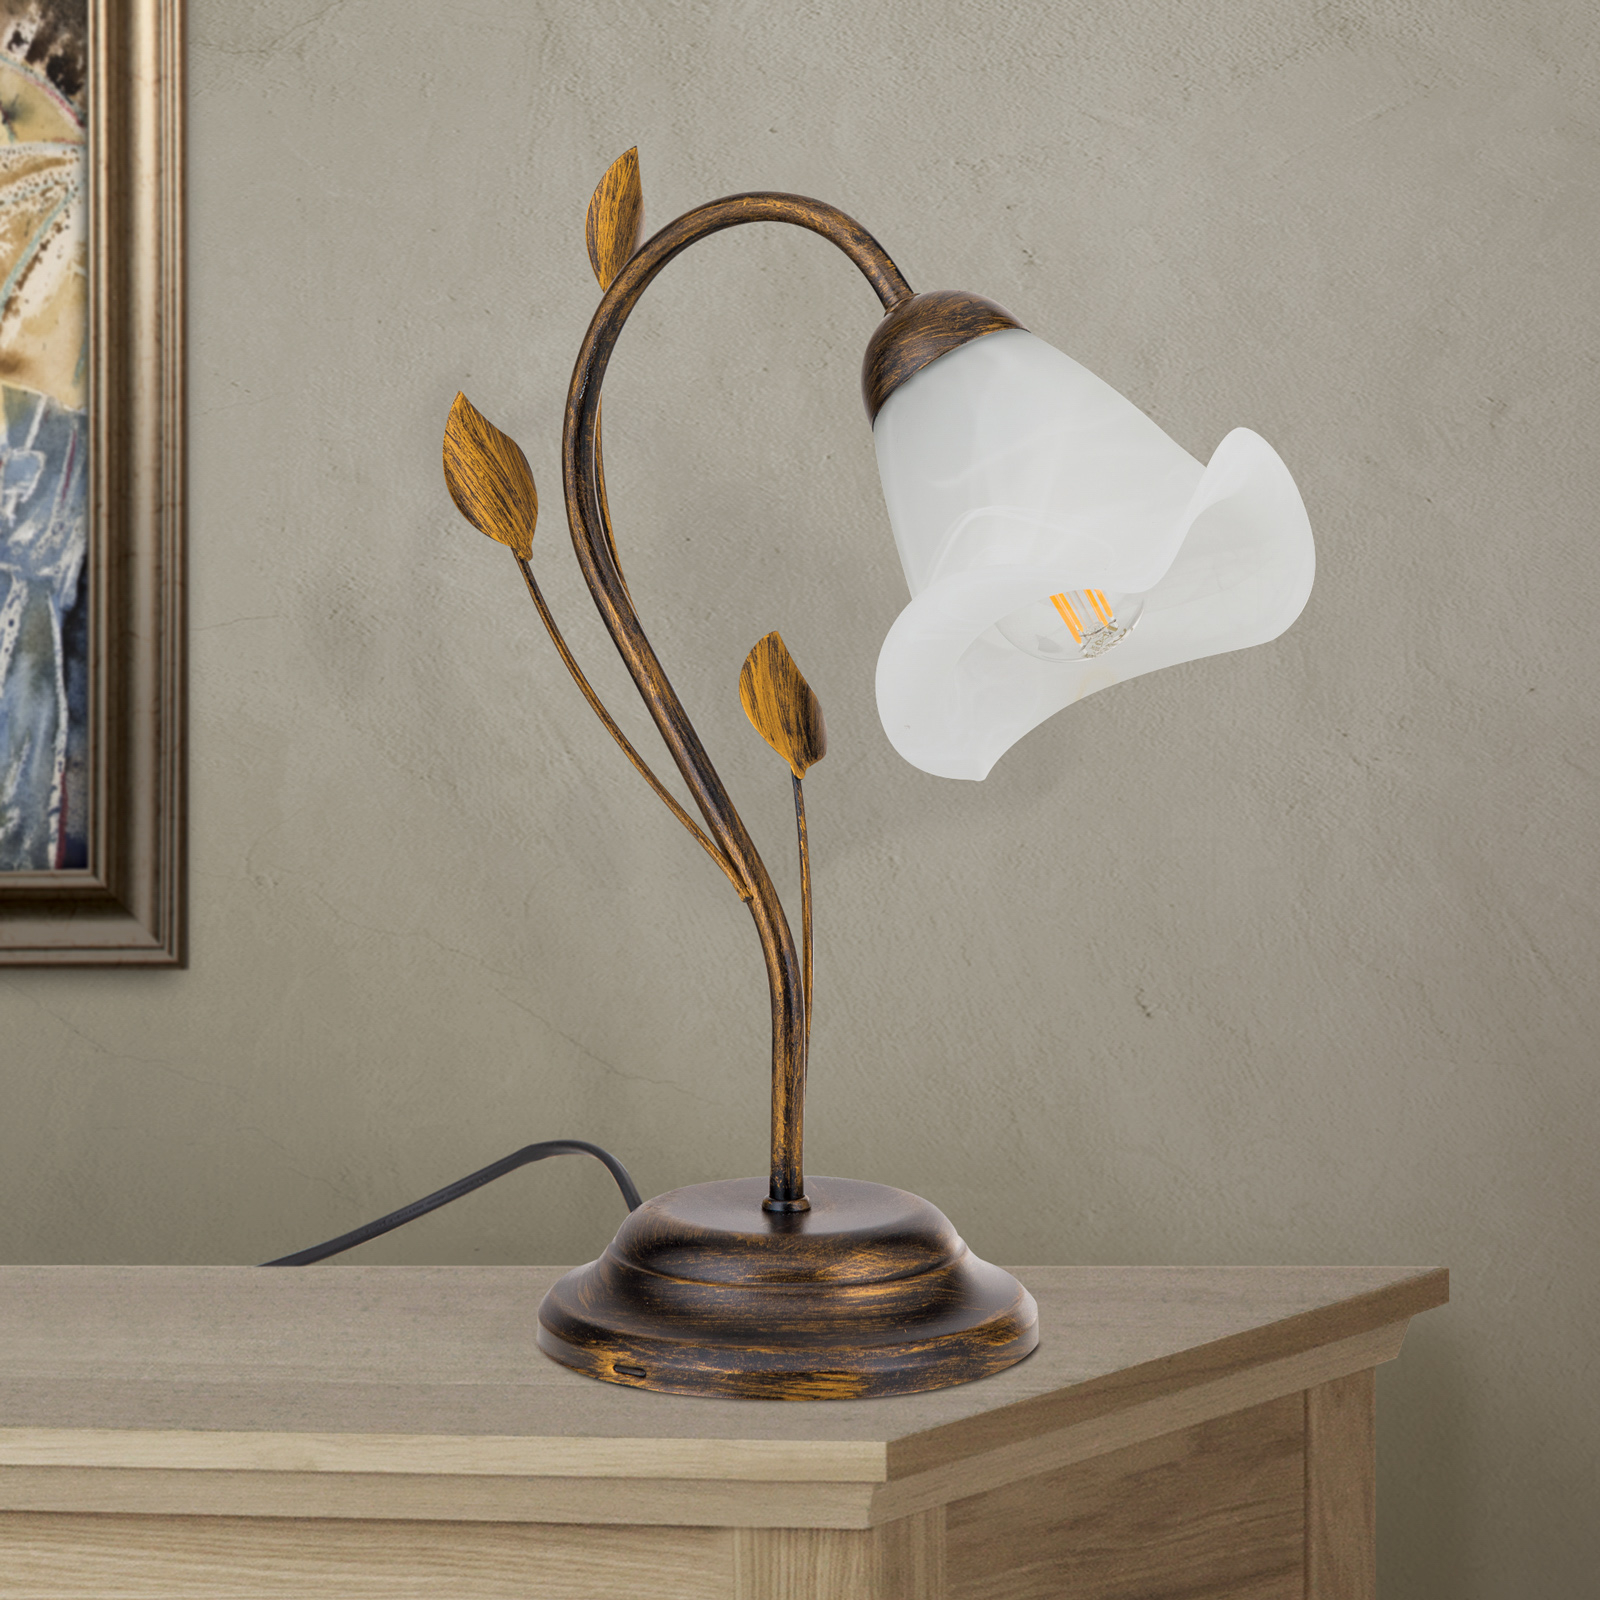 Настолна лампа Sisi във флорентински стил, антикварна